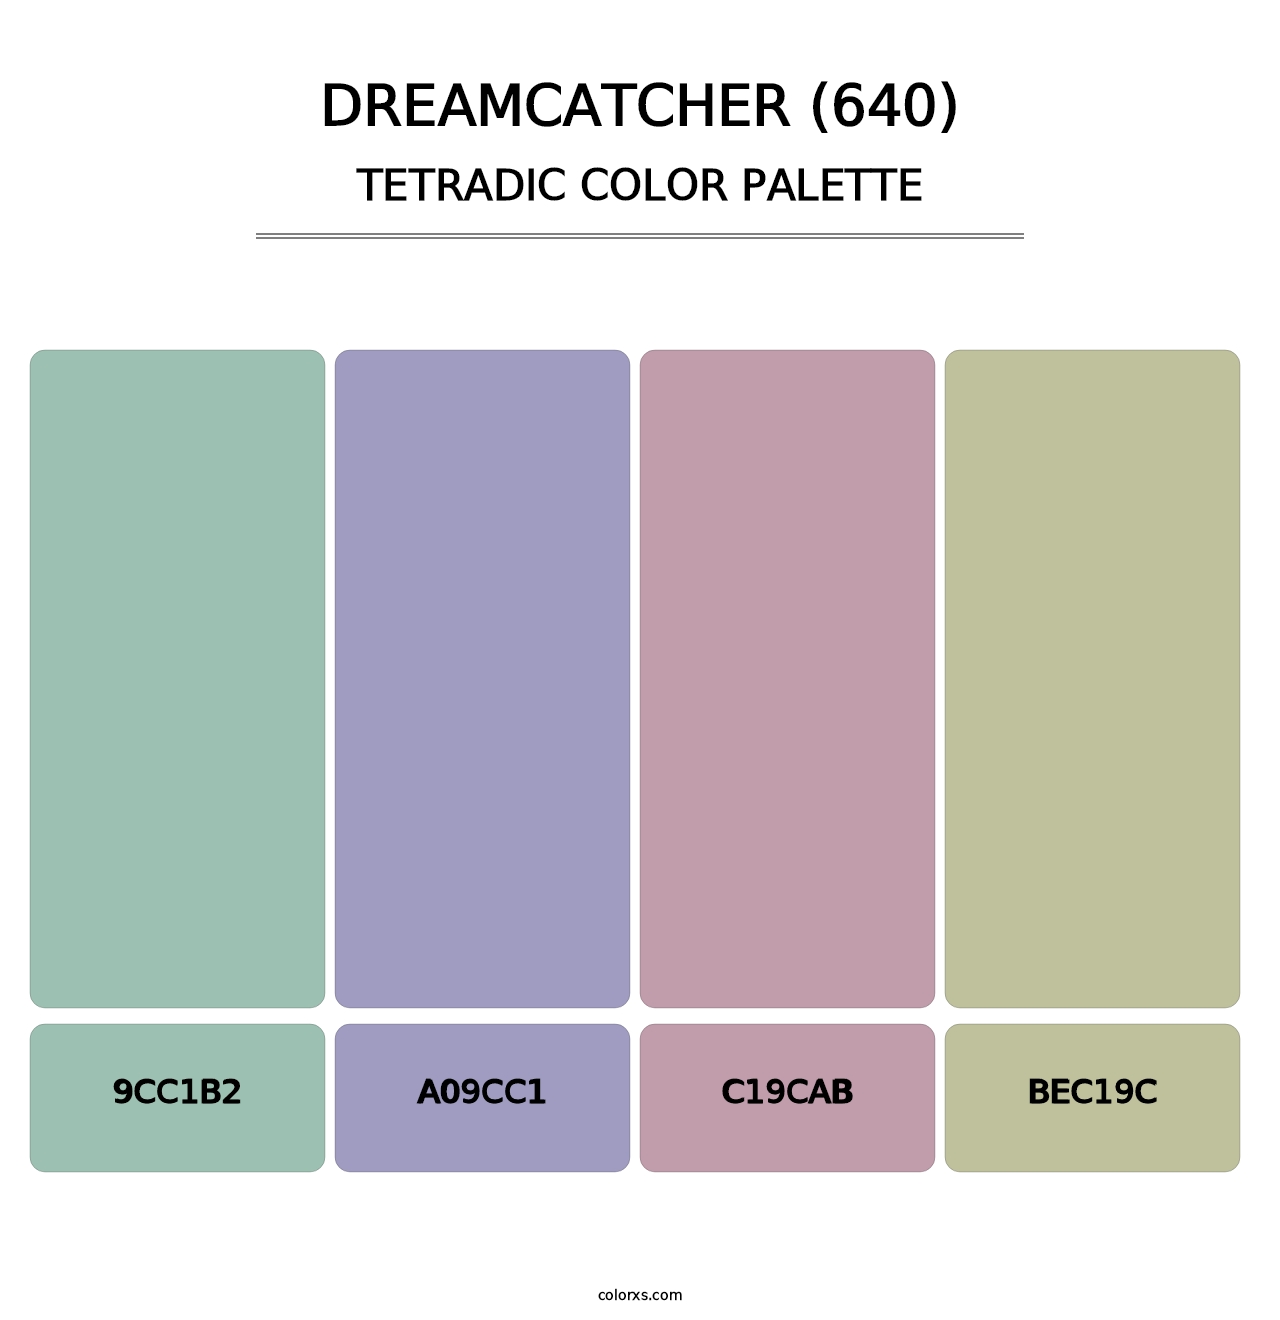 Dreamcatcher (640) - Tetradic Color Palette